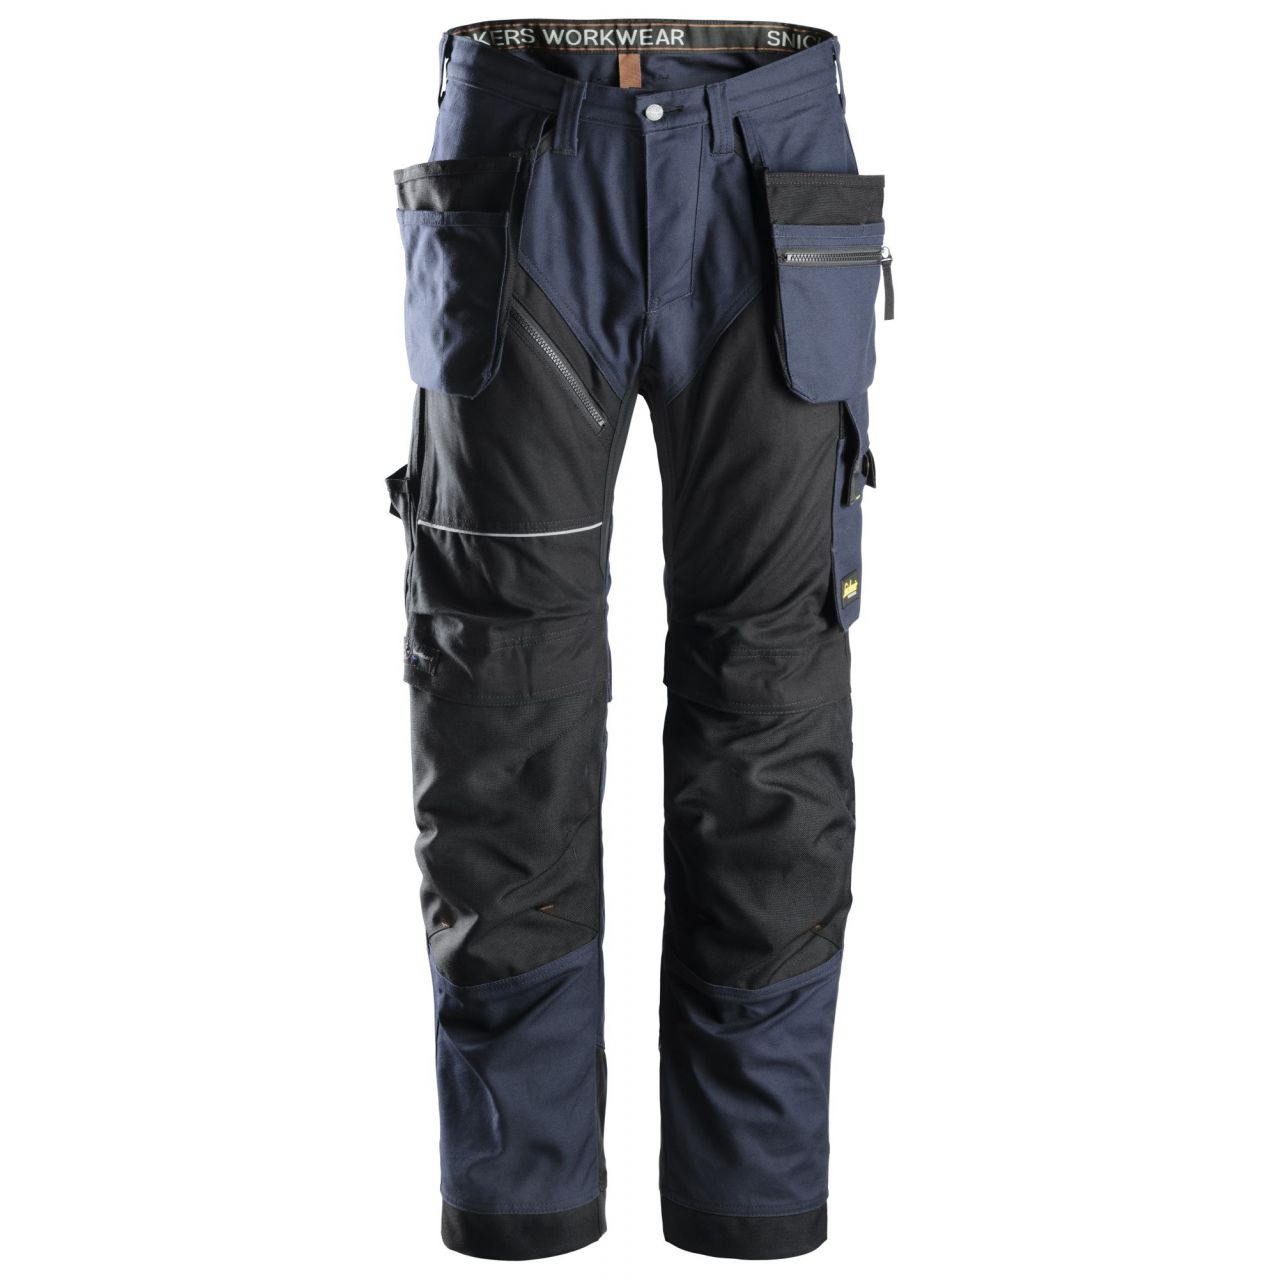 6215 Pantalón largo RuffWork Algodón con bolsillos flotantes azul marino-negro talla 152